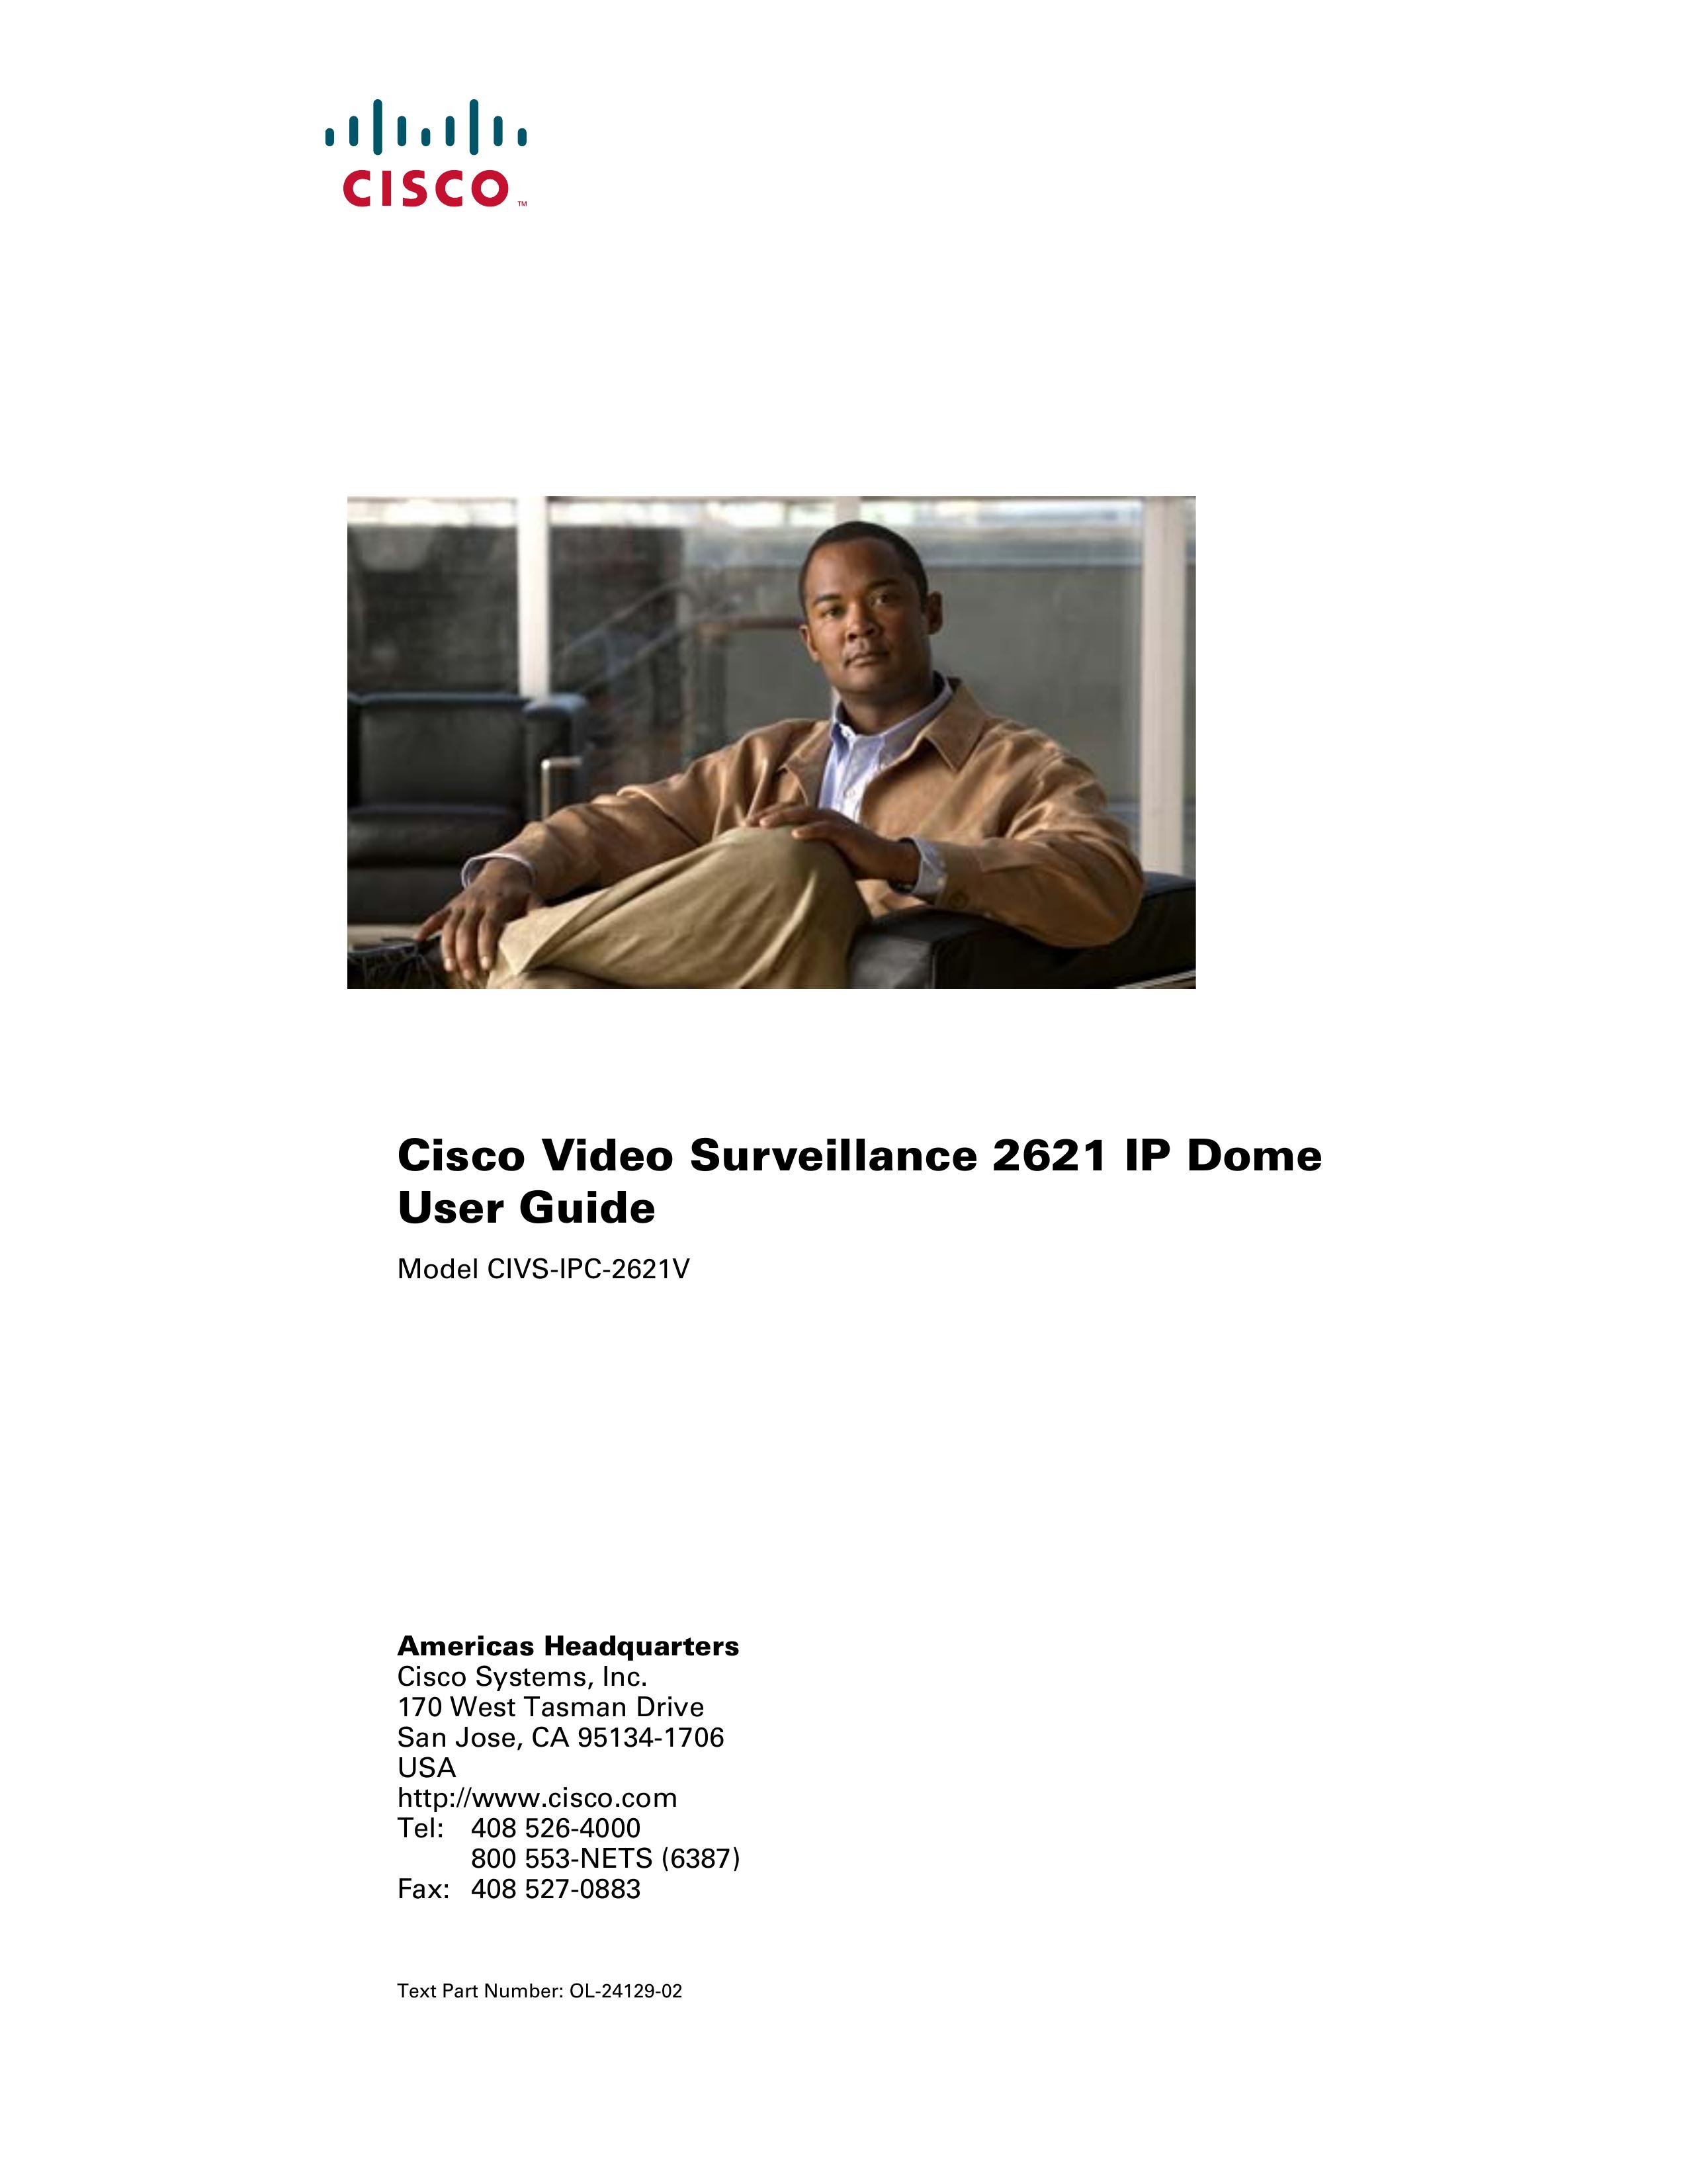 Cisco Systems CIVS-IPC-2621V Security Camera User Manual